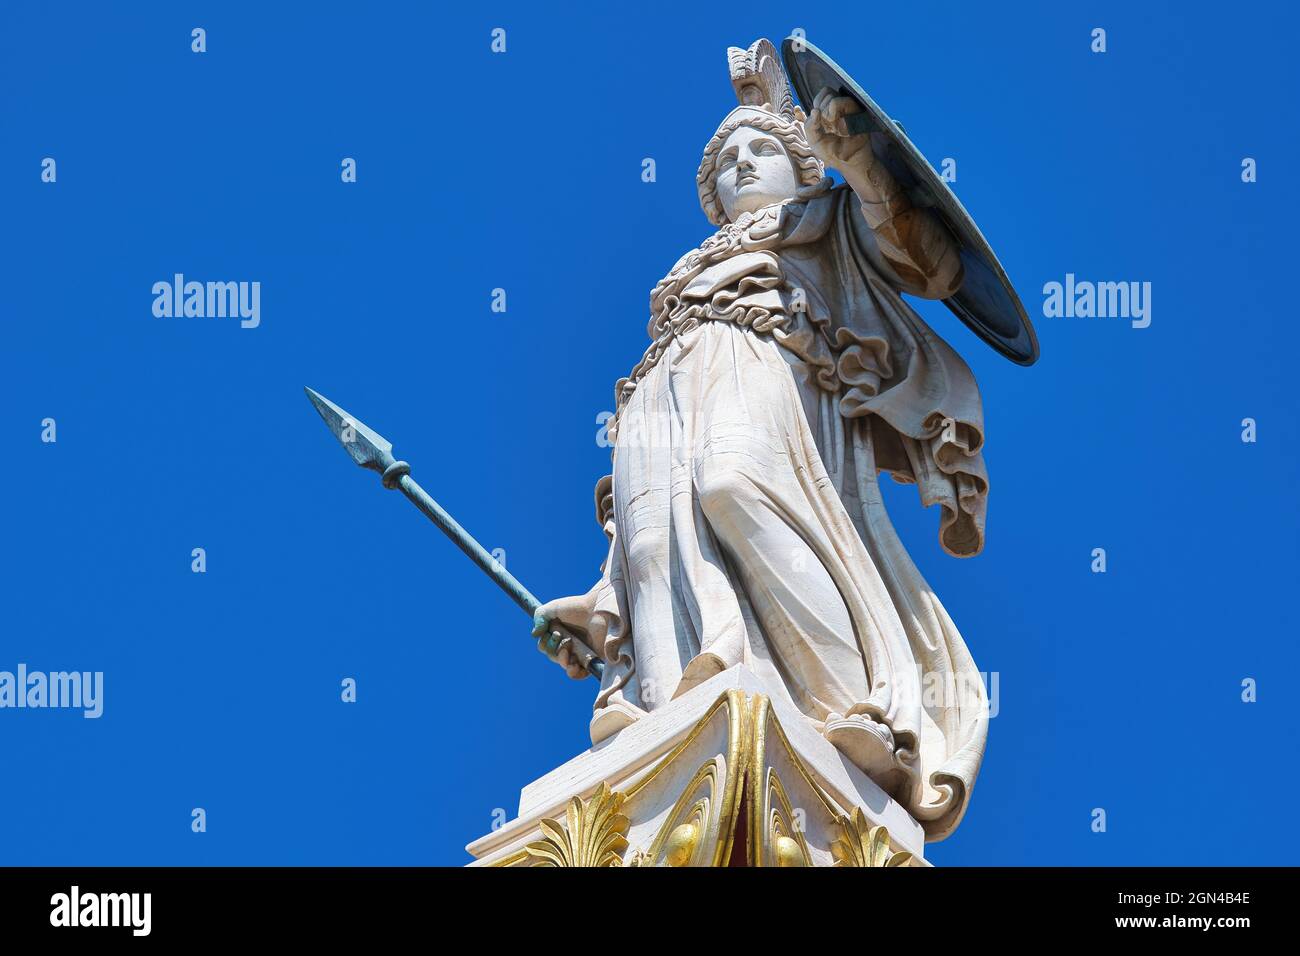 Athena ou Athene, souvent donné le nom de Pallas, est une ancienne déesse grecque associée à la sagesse, une statue dans le centre d'Athènes Banque D'Images